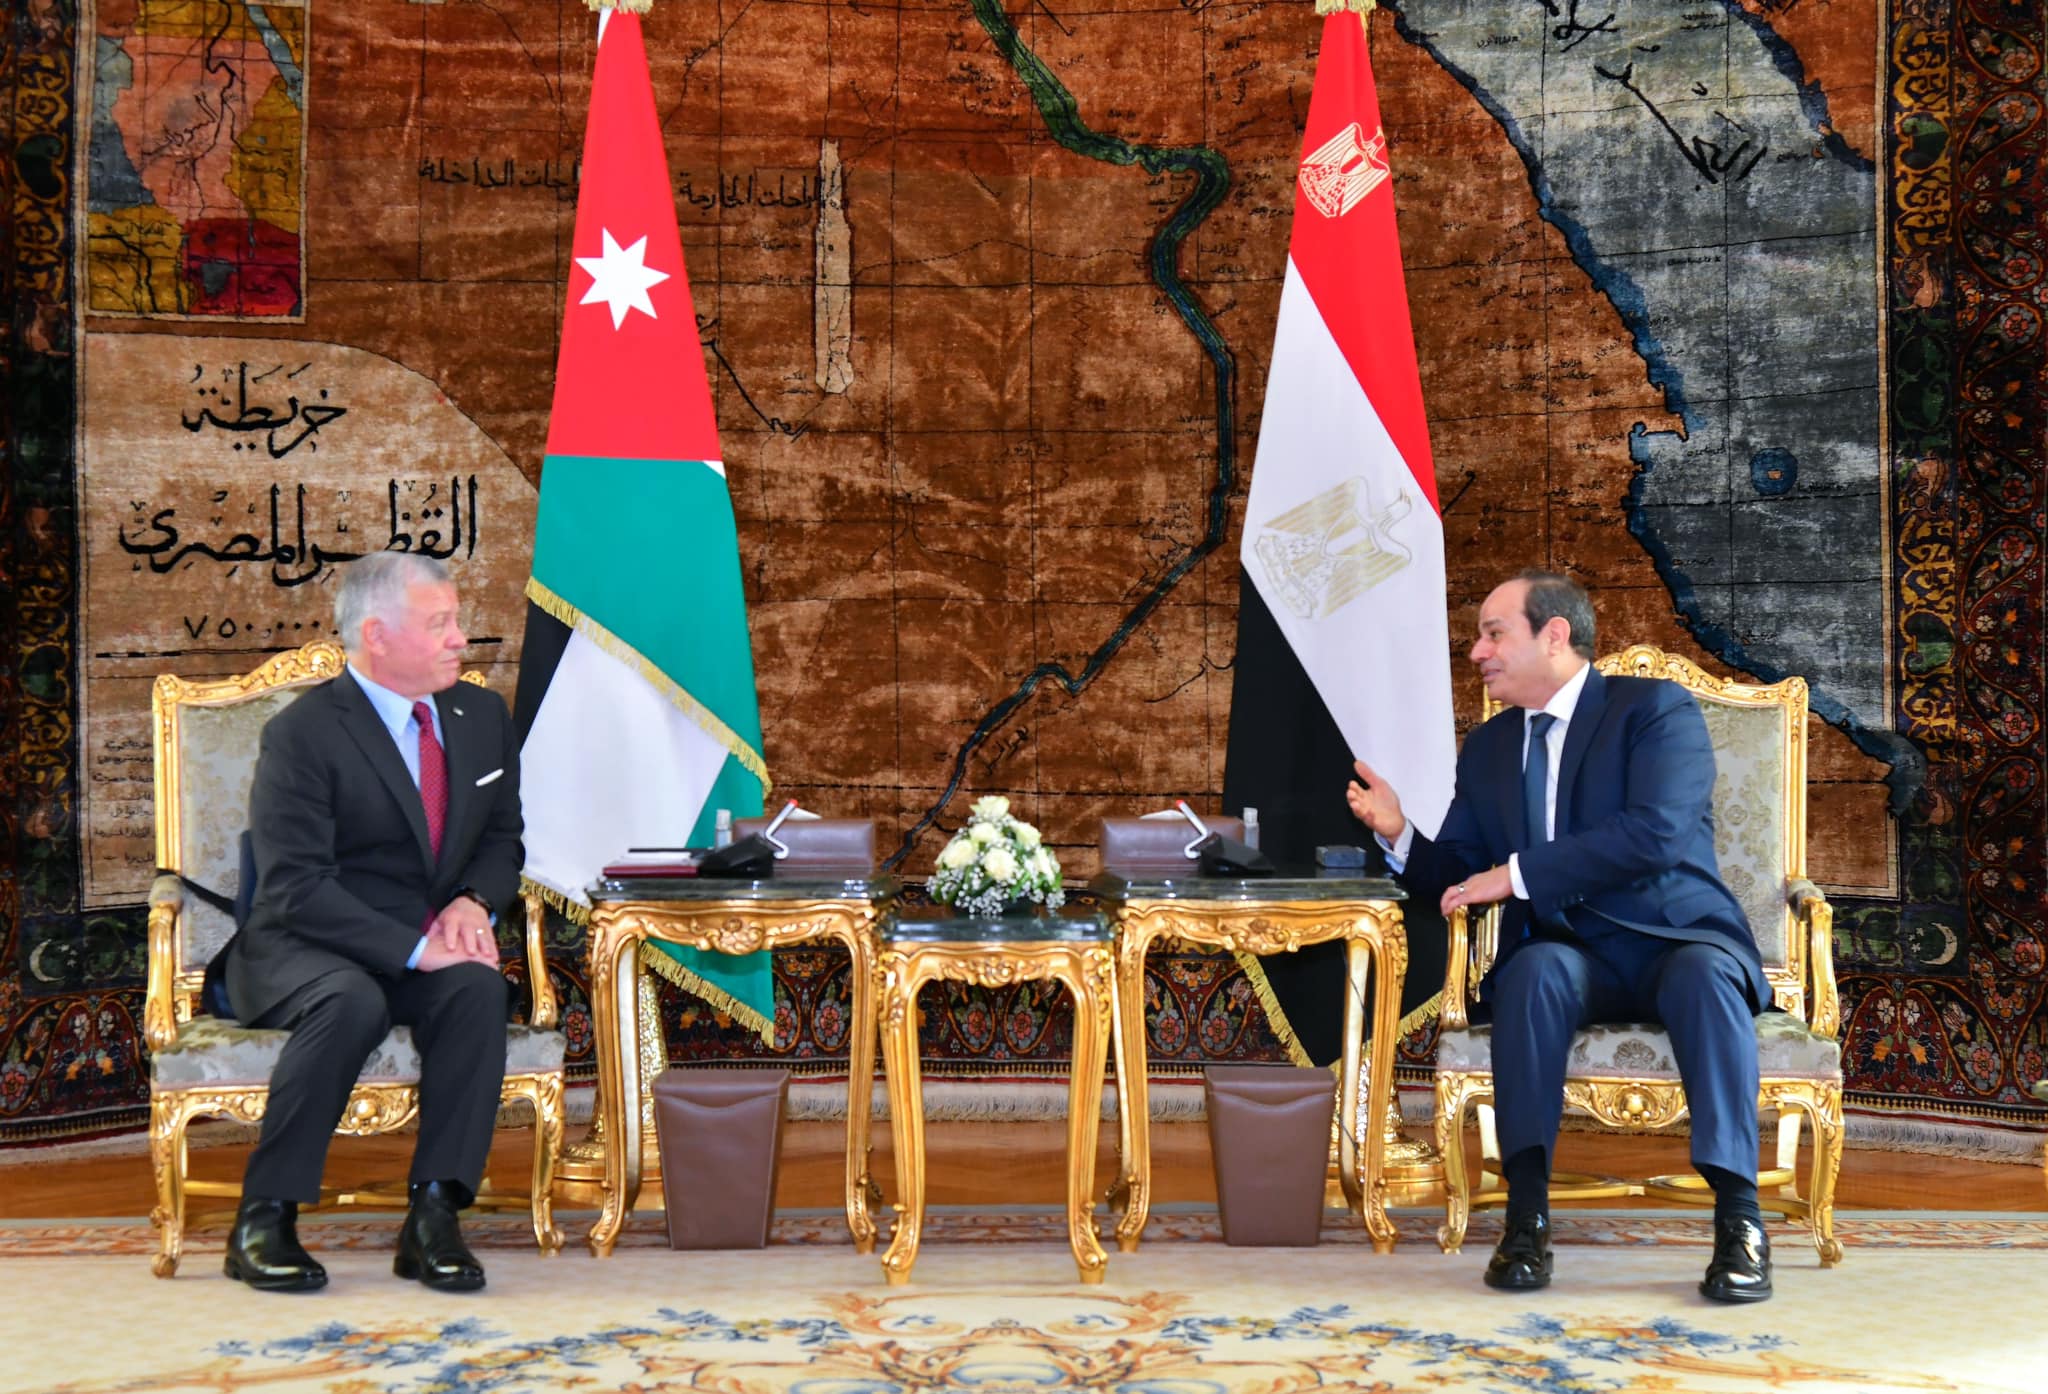 Egypt's President Abdelfattah Al-Sisi and King Abdullah II of Jordan